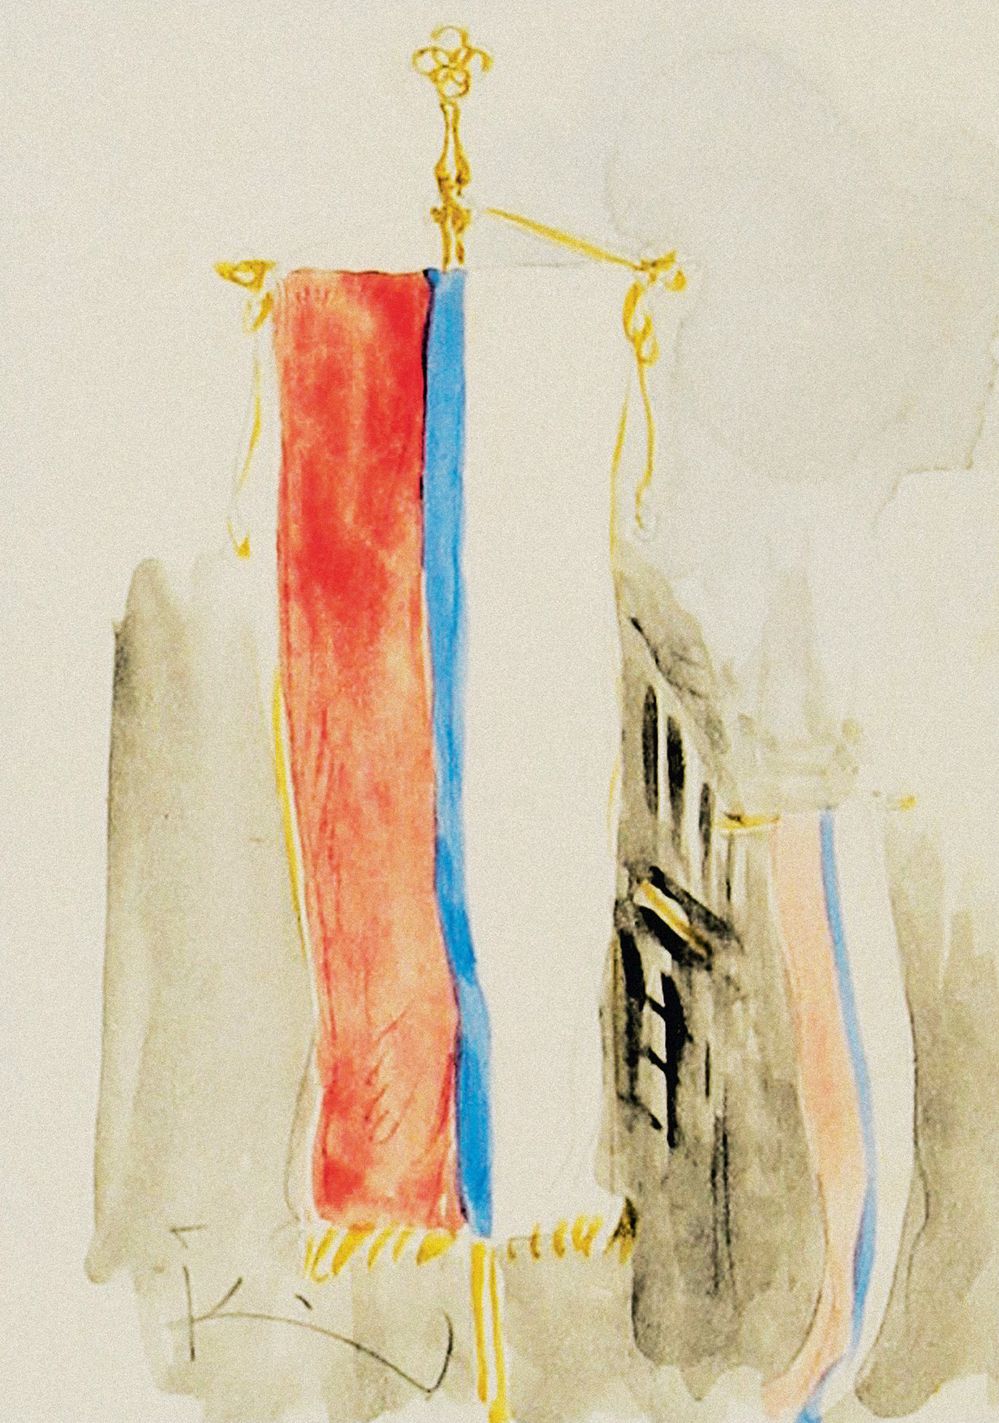 František Kupka, návrh státní vlajky, 1919. Jeden z tvůrců českého moderního umění, František Kupka, vytvořil čtyři akvarelové kresby ve slovanských barvách. Jeho kombinace barevných pruhů, které používalo na svých symbolech více evropských států, byly právě z tohoto důvodu členy znakové komise zamítnuty.